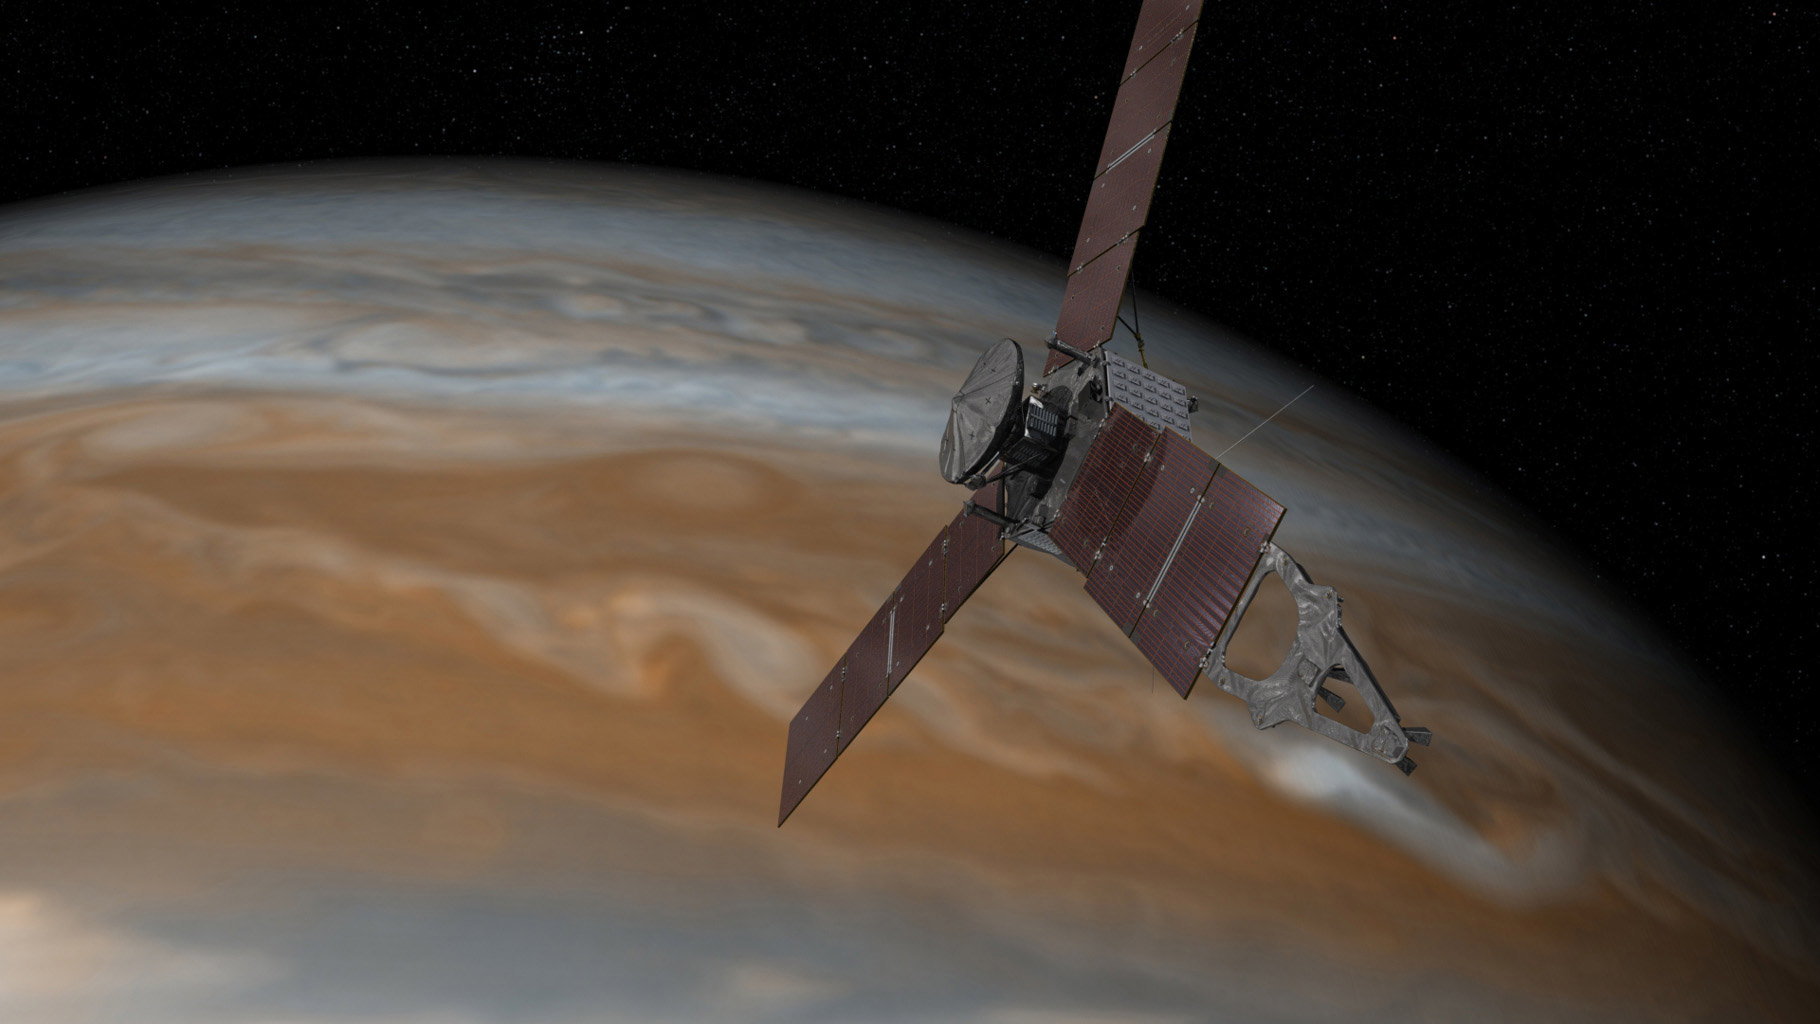 Le système d'exploitation temps réel VxWorks de Wind River a permis à la Nasa d'approcher la sonde Juno au plus près de Jupiter cinquième planète à partir du soleil. Le RTOS  a servi dans le cadre d'opérations critiques de guidage, de navigation, de transfert de données, de propulsion, de communication notamment. © Nasa, JPL